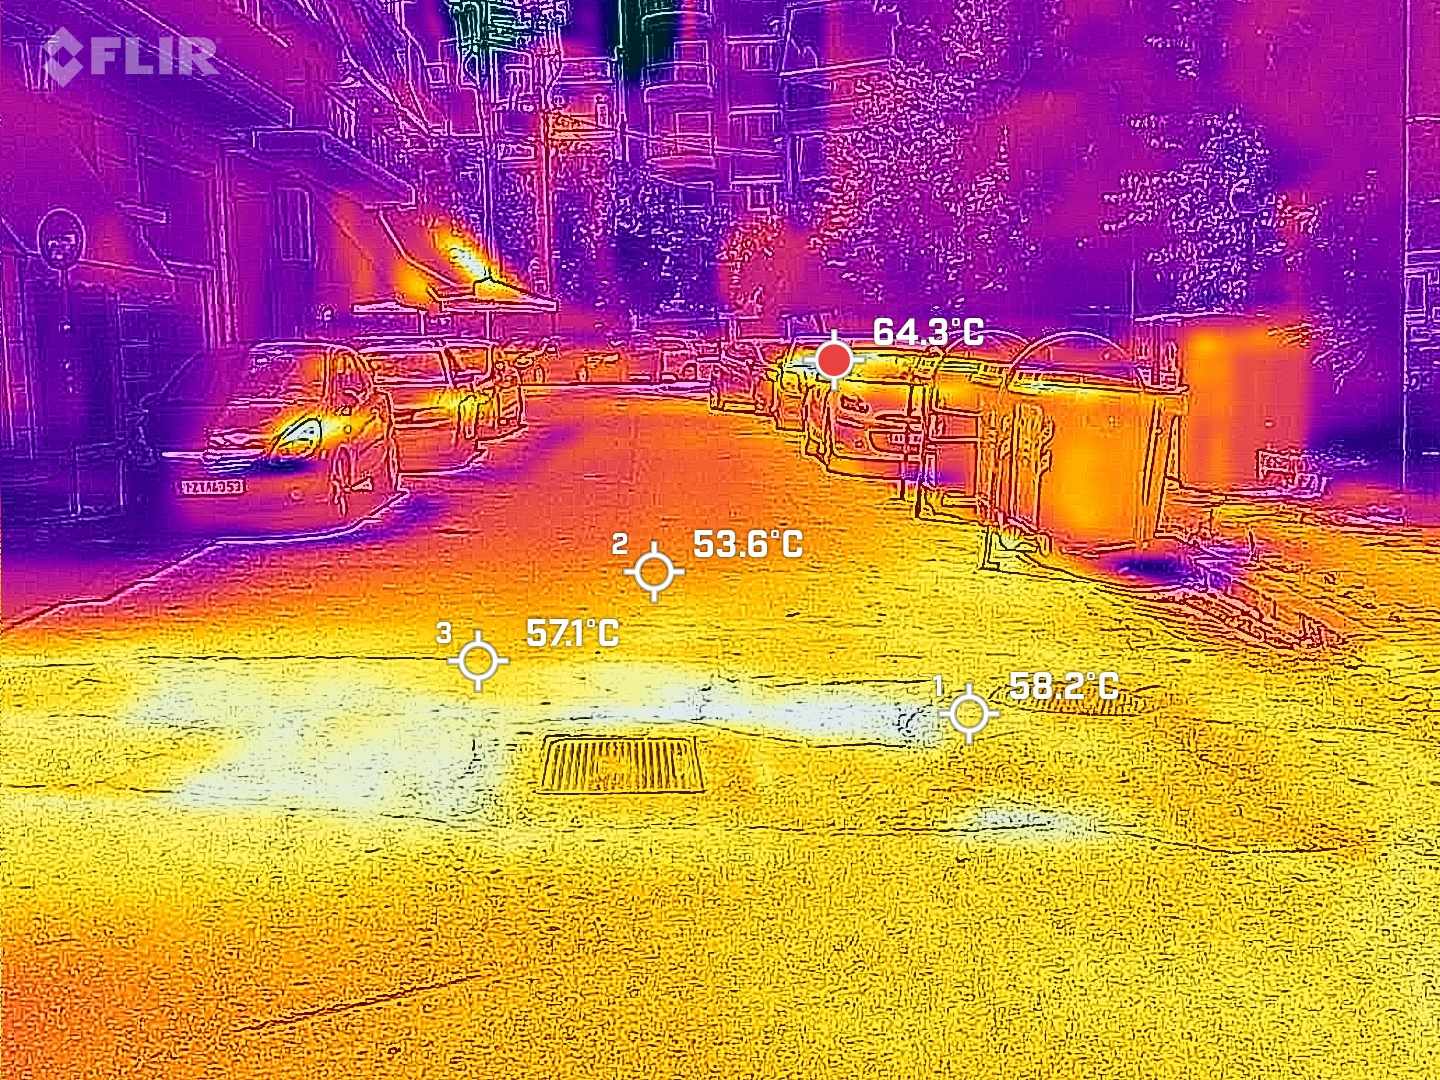 Καύσωνας: Πόσο έφτασε η θερμοκρασία στον δρόμο και την άσφαλτο - Δείτε φωτογραφίες από θερμική κάμερα